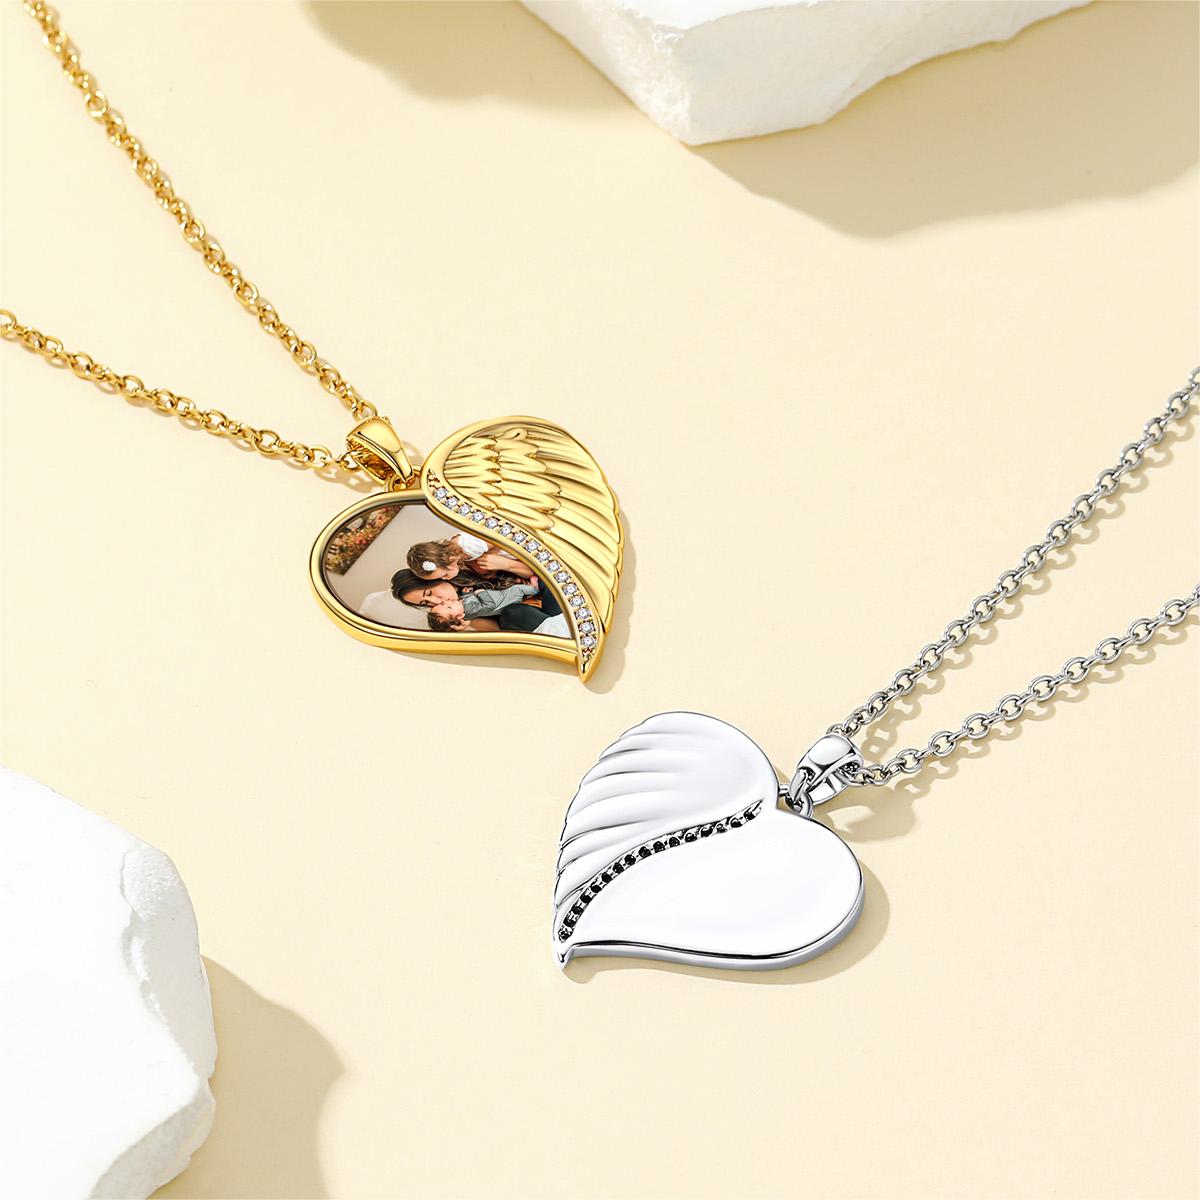 Birthstonesjewelry Angel Wings Heart Necklace 2 Colors